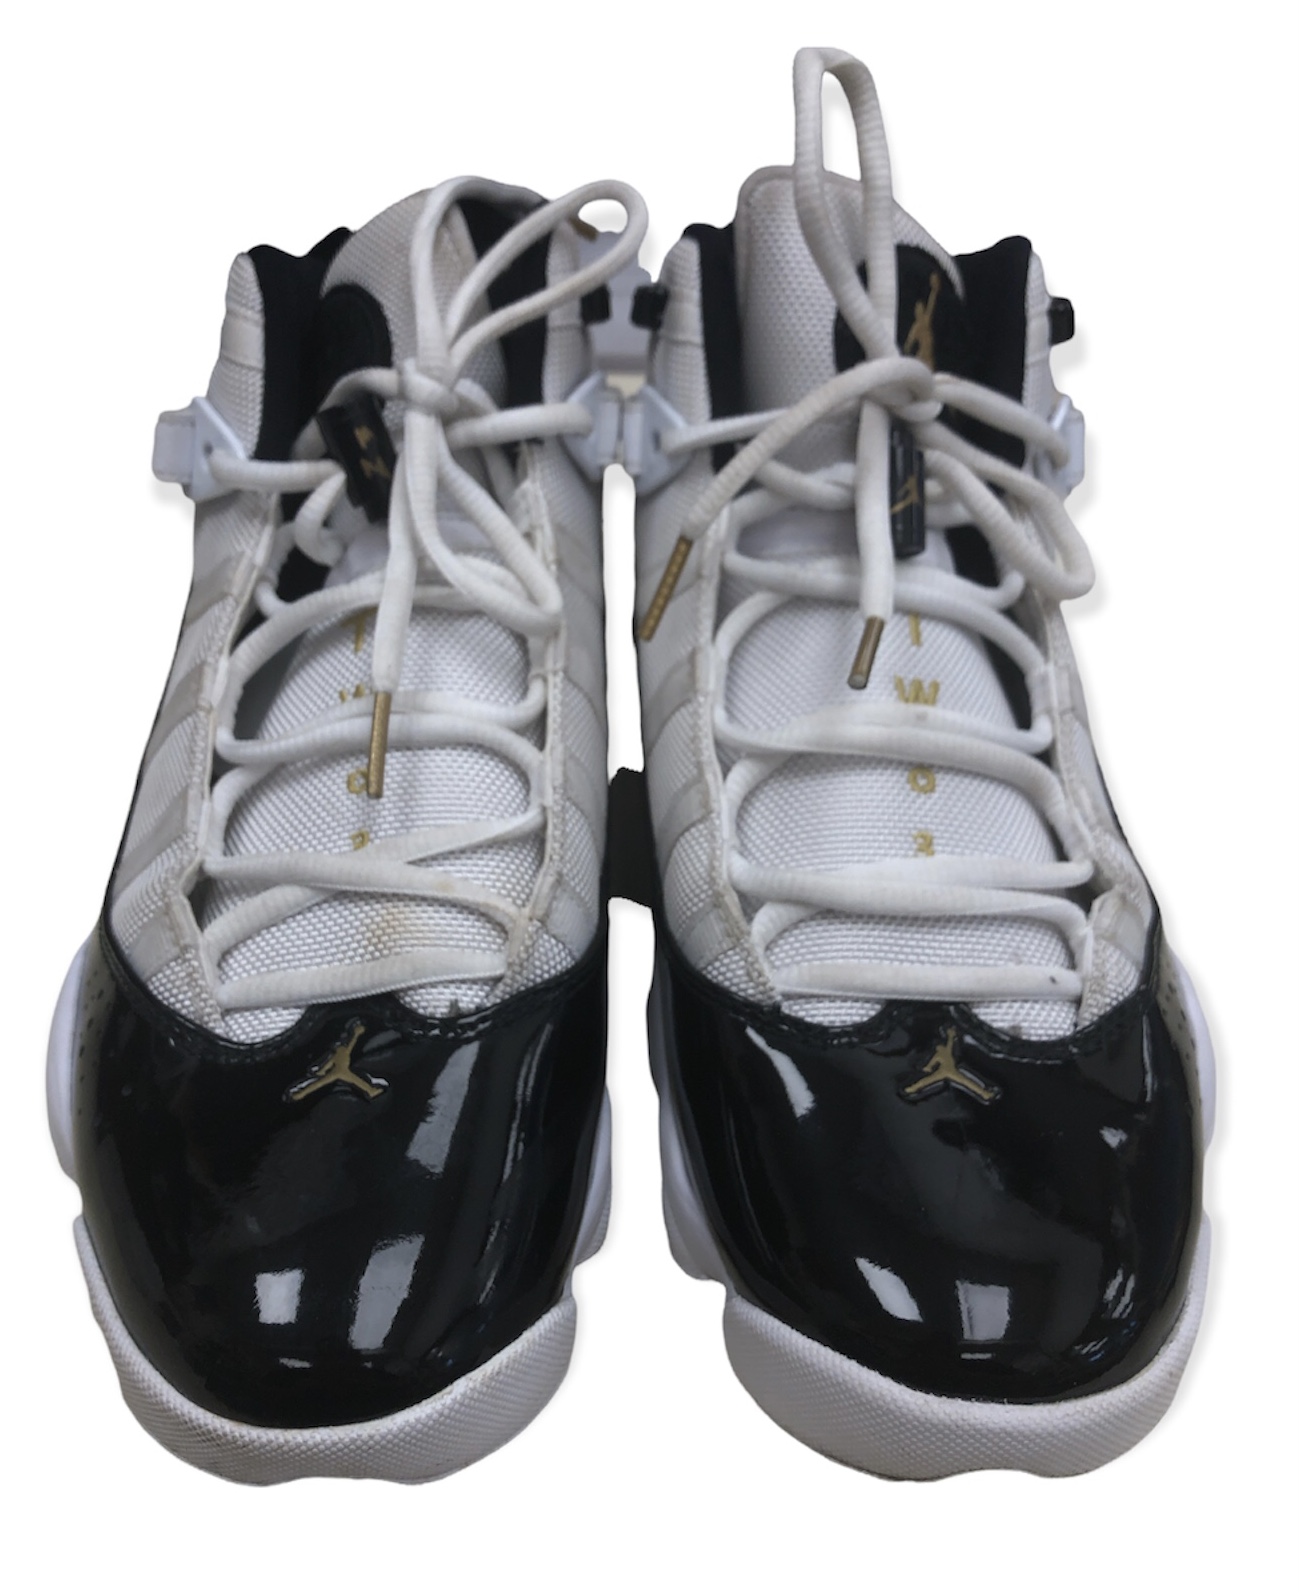 Jordan Shoes 6 Rings 